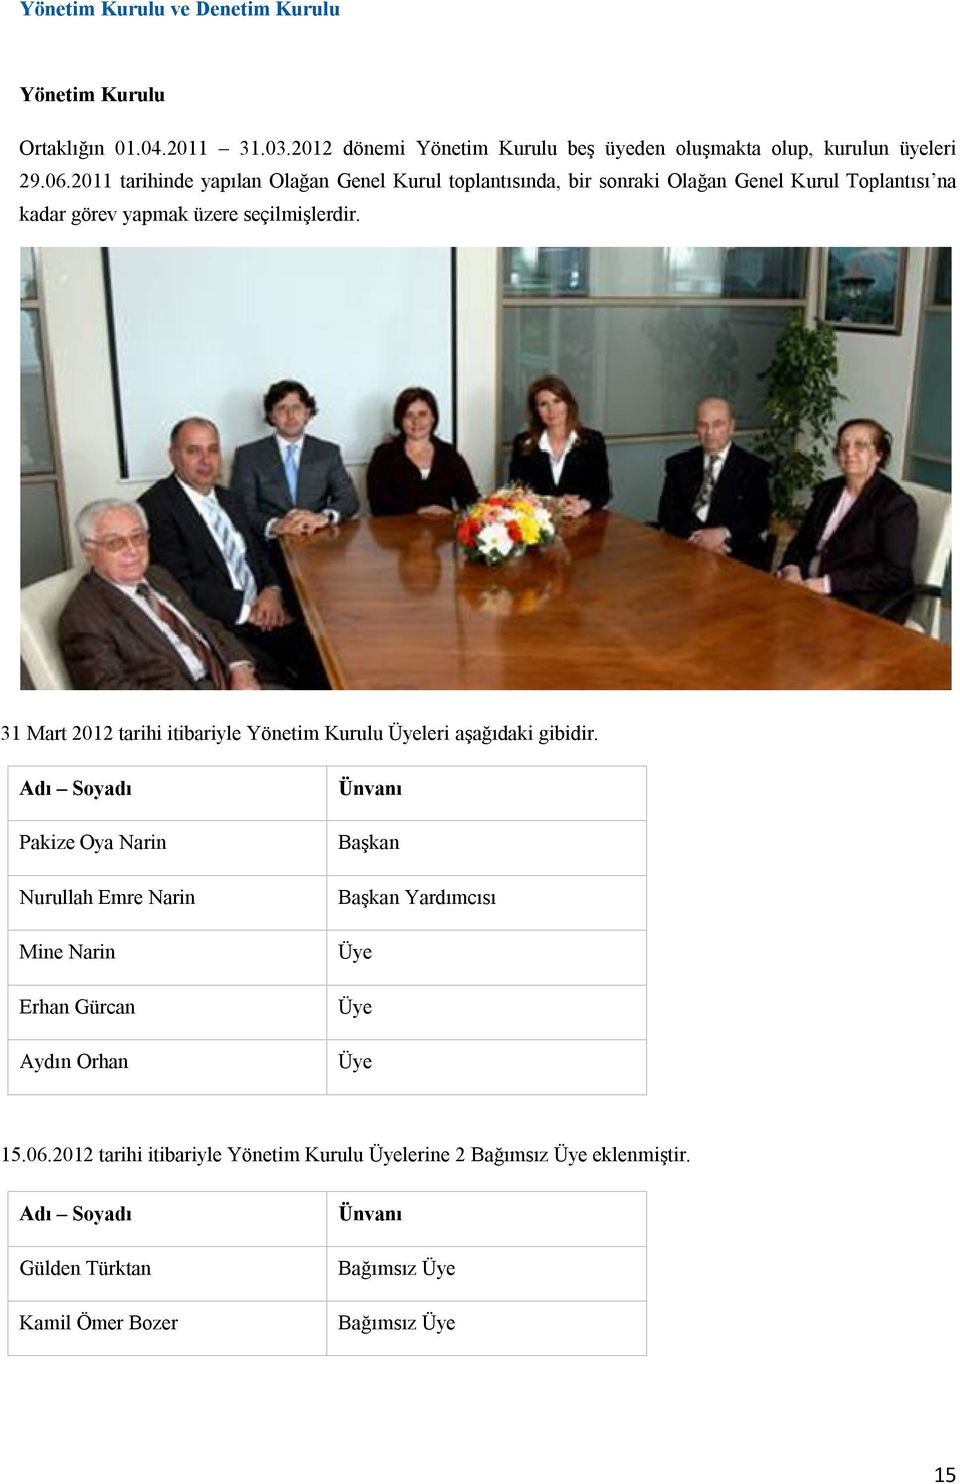 31 Mart 2012 tarihi itibariyle Yönetim Kurulu Üyeleri aşağıdaki gibidir.